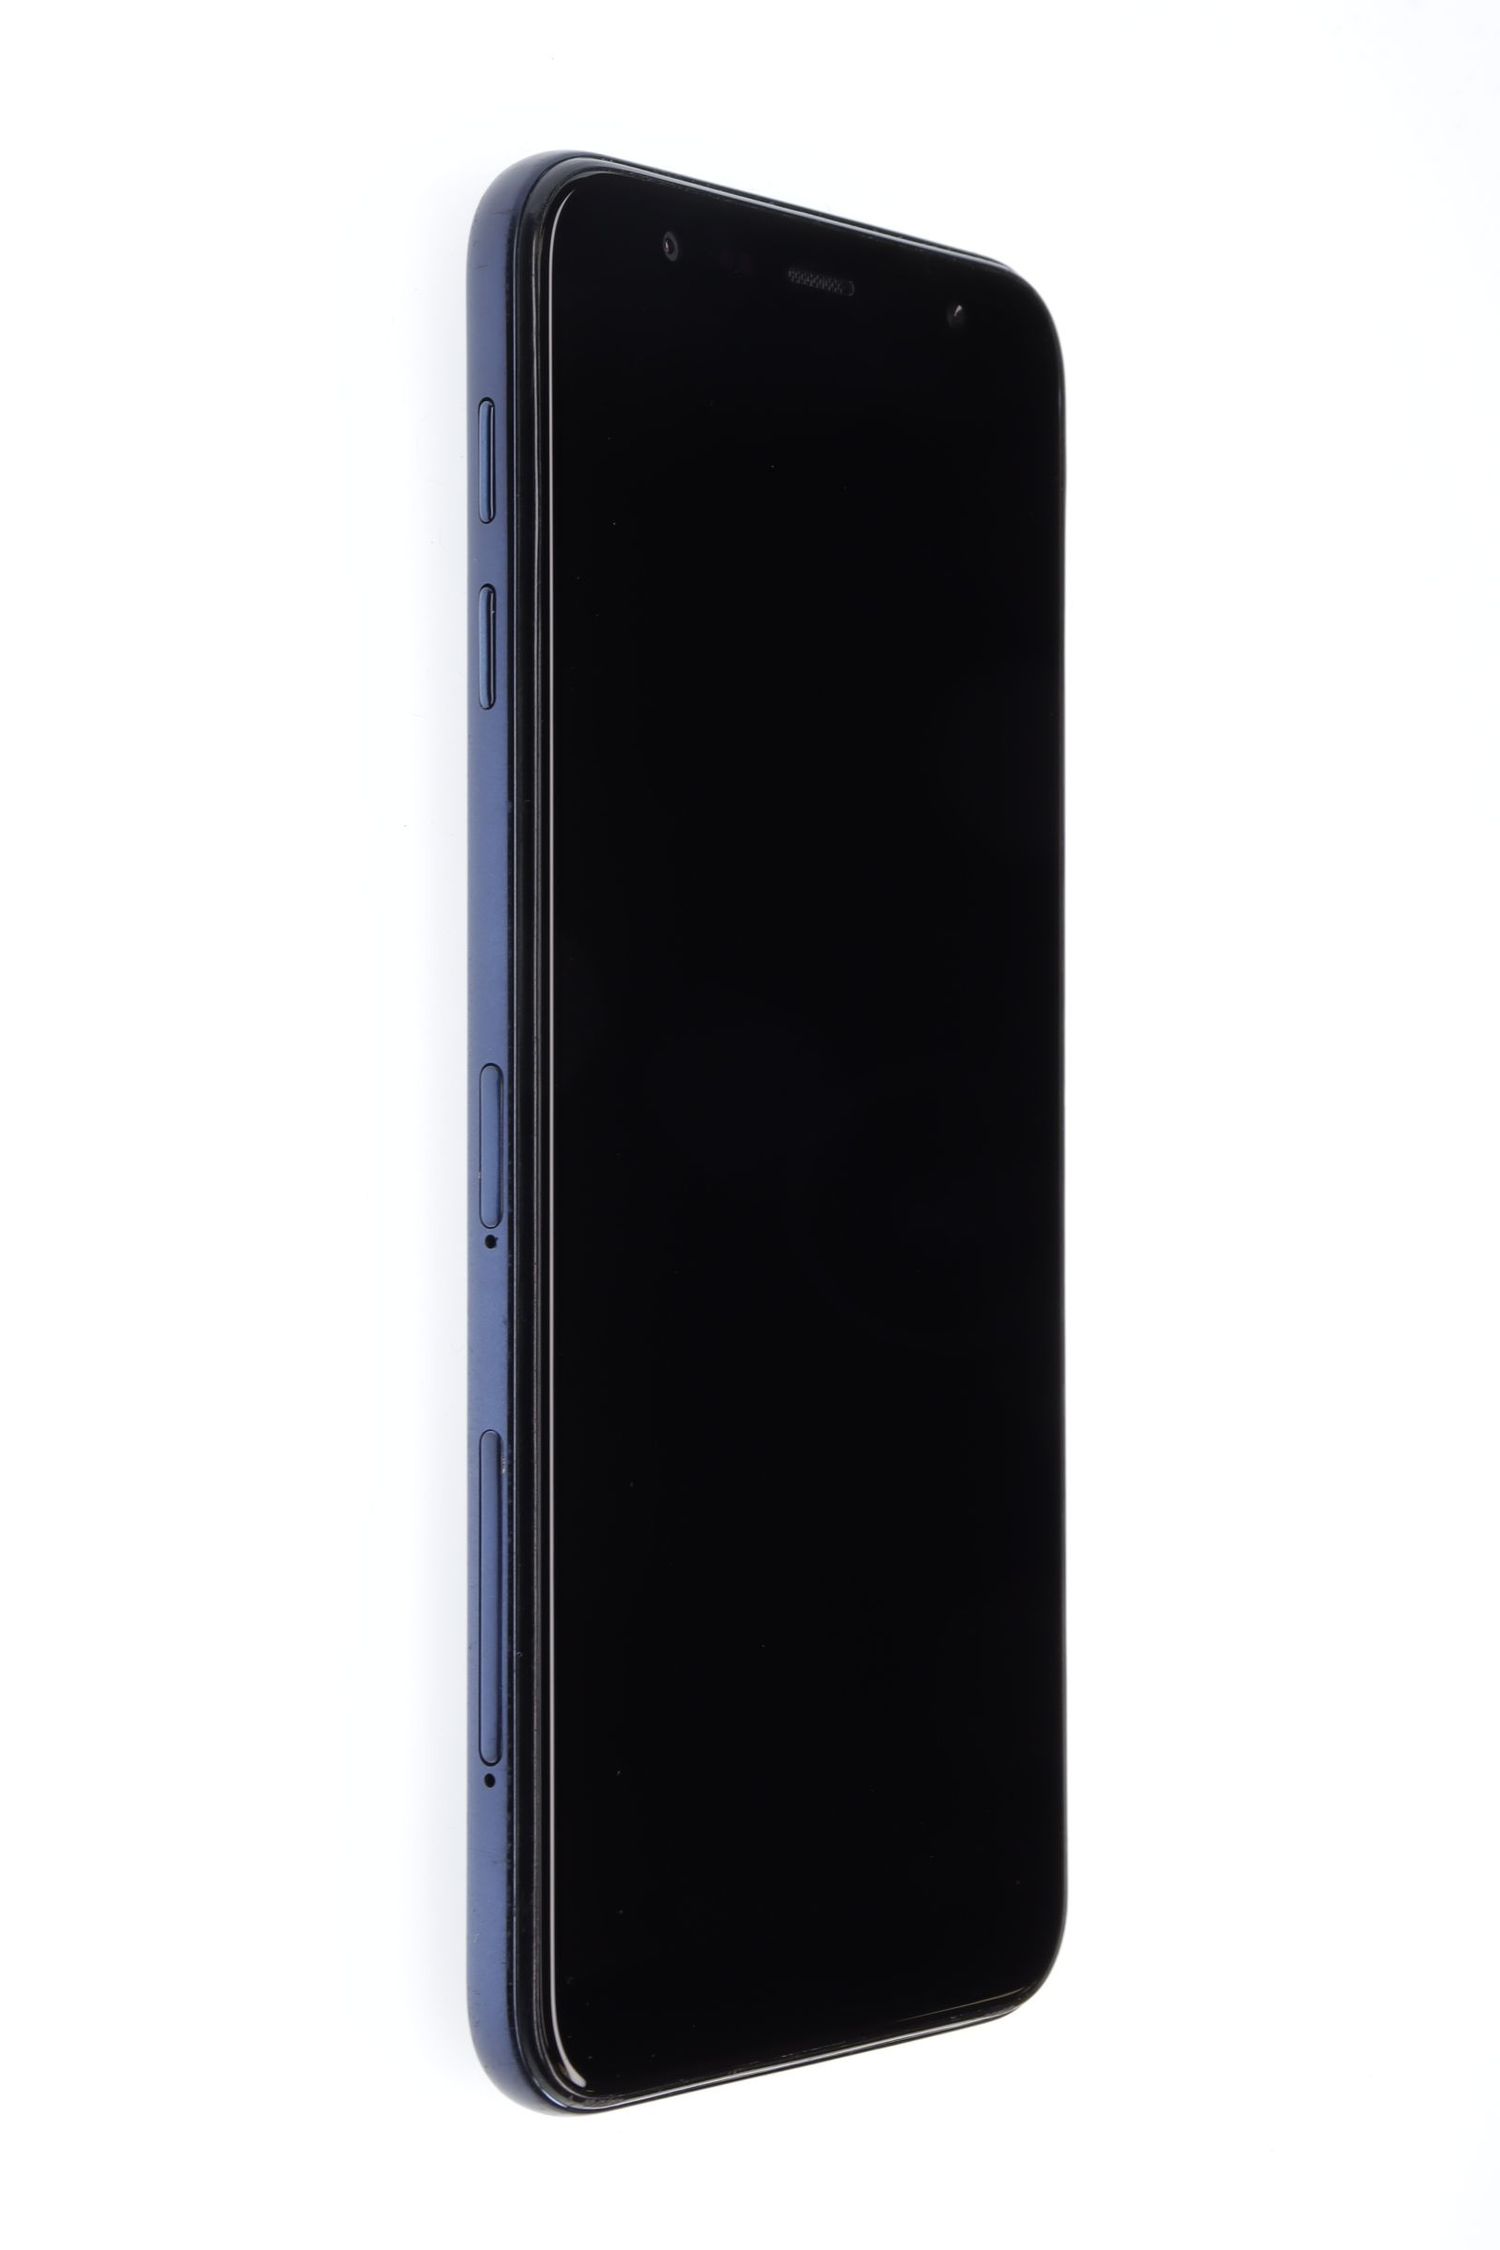 Κινητό τηλέφωνο Samsung Galaxy J6 Plus (2018), Black, 32 GB, Excelent